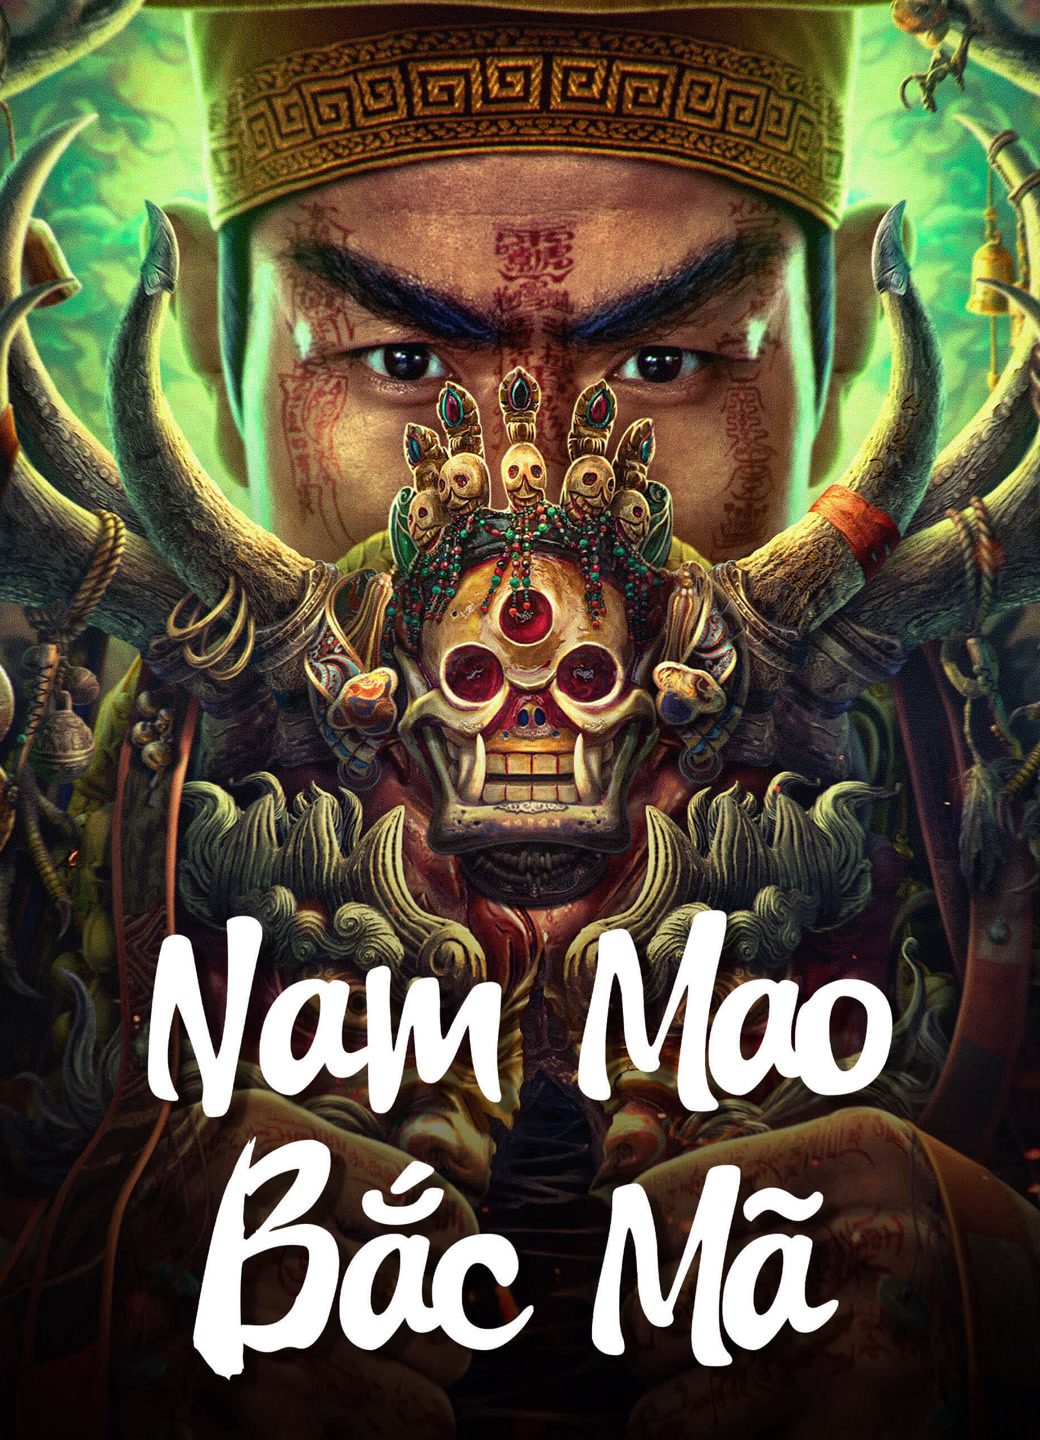 Nam Mao Bắc Mã - Nanmao and Beima